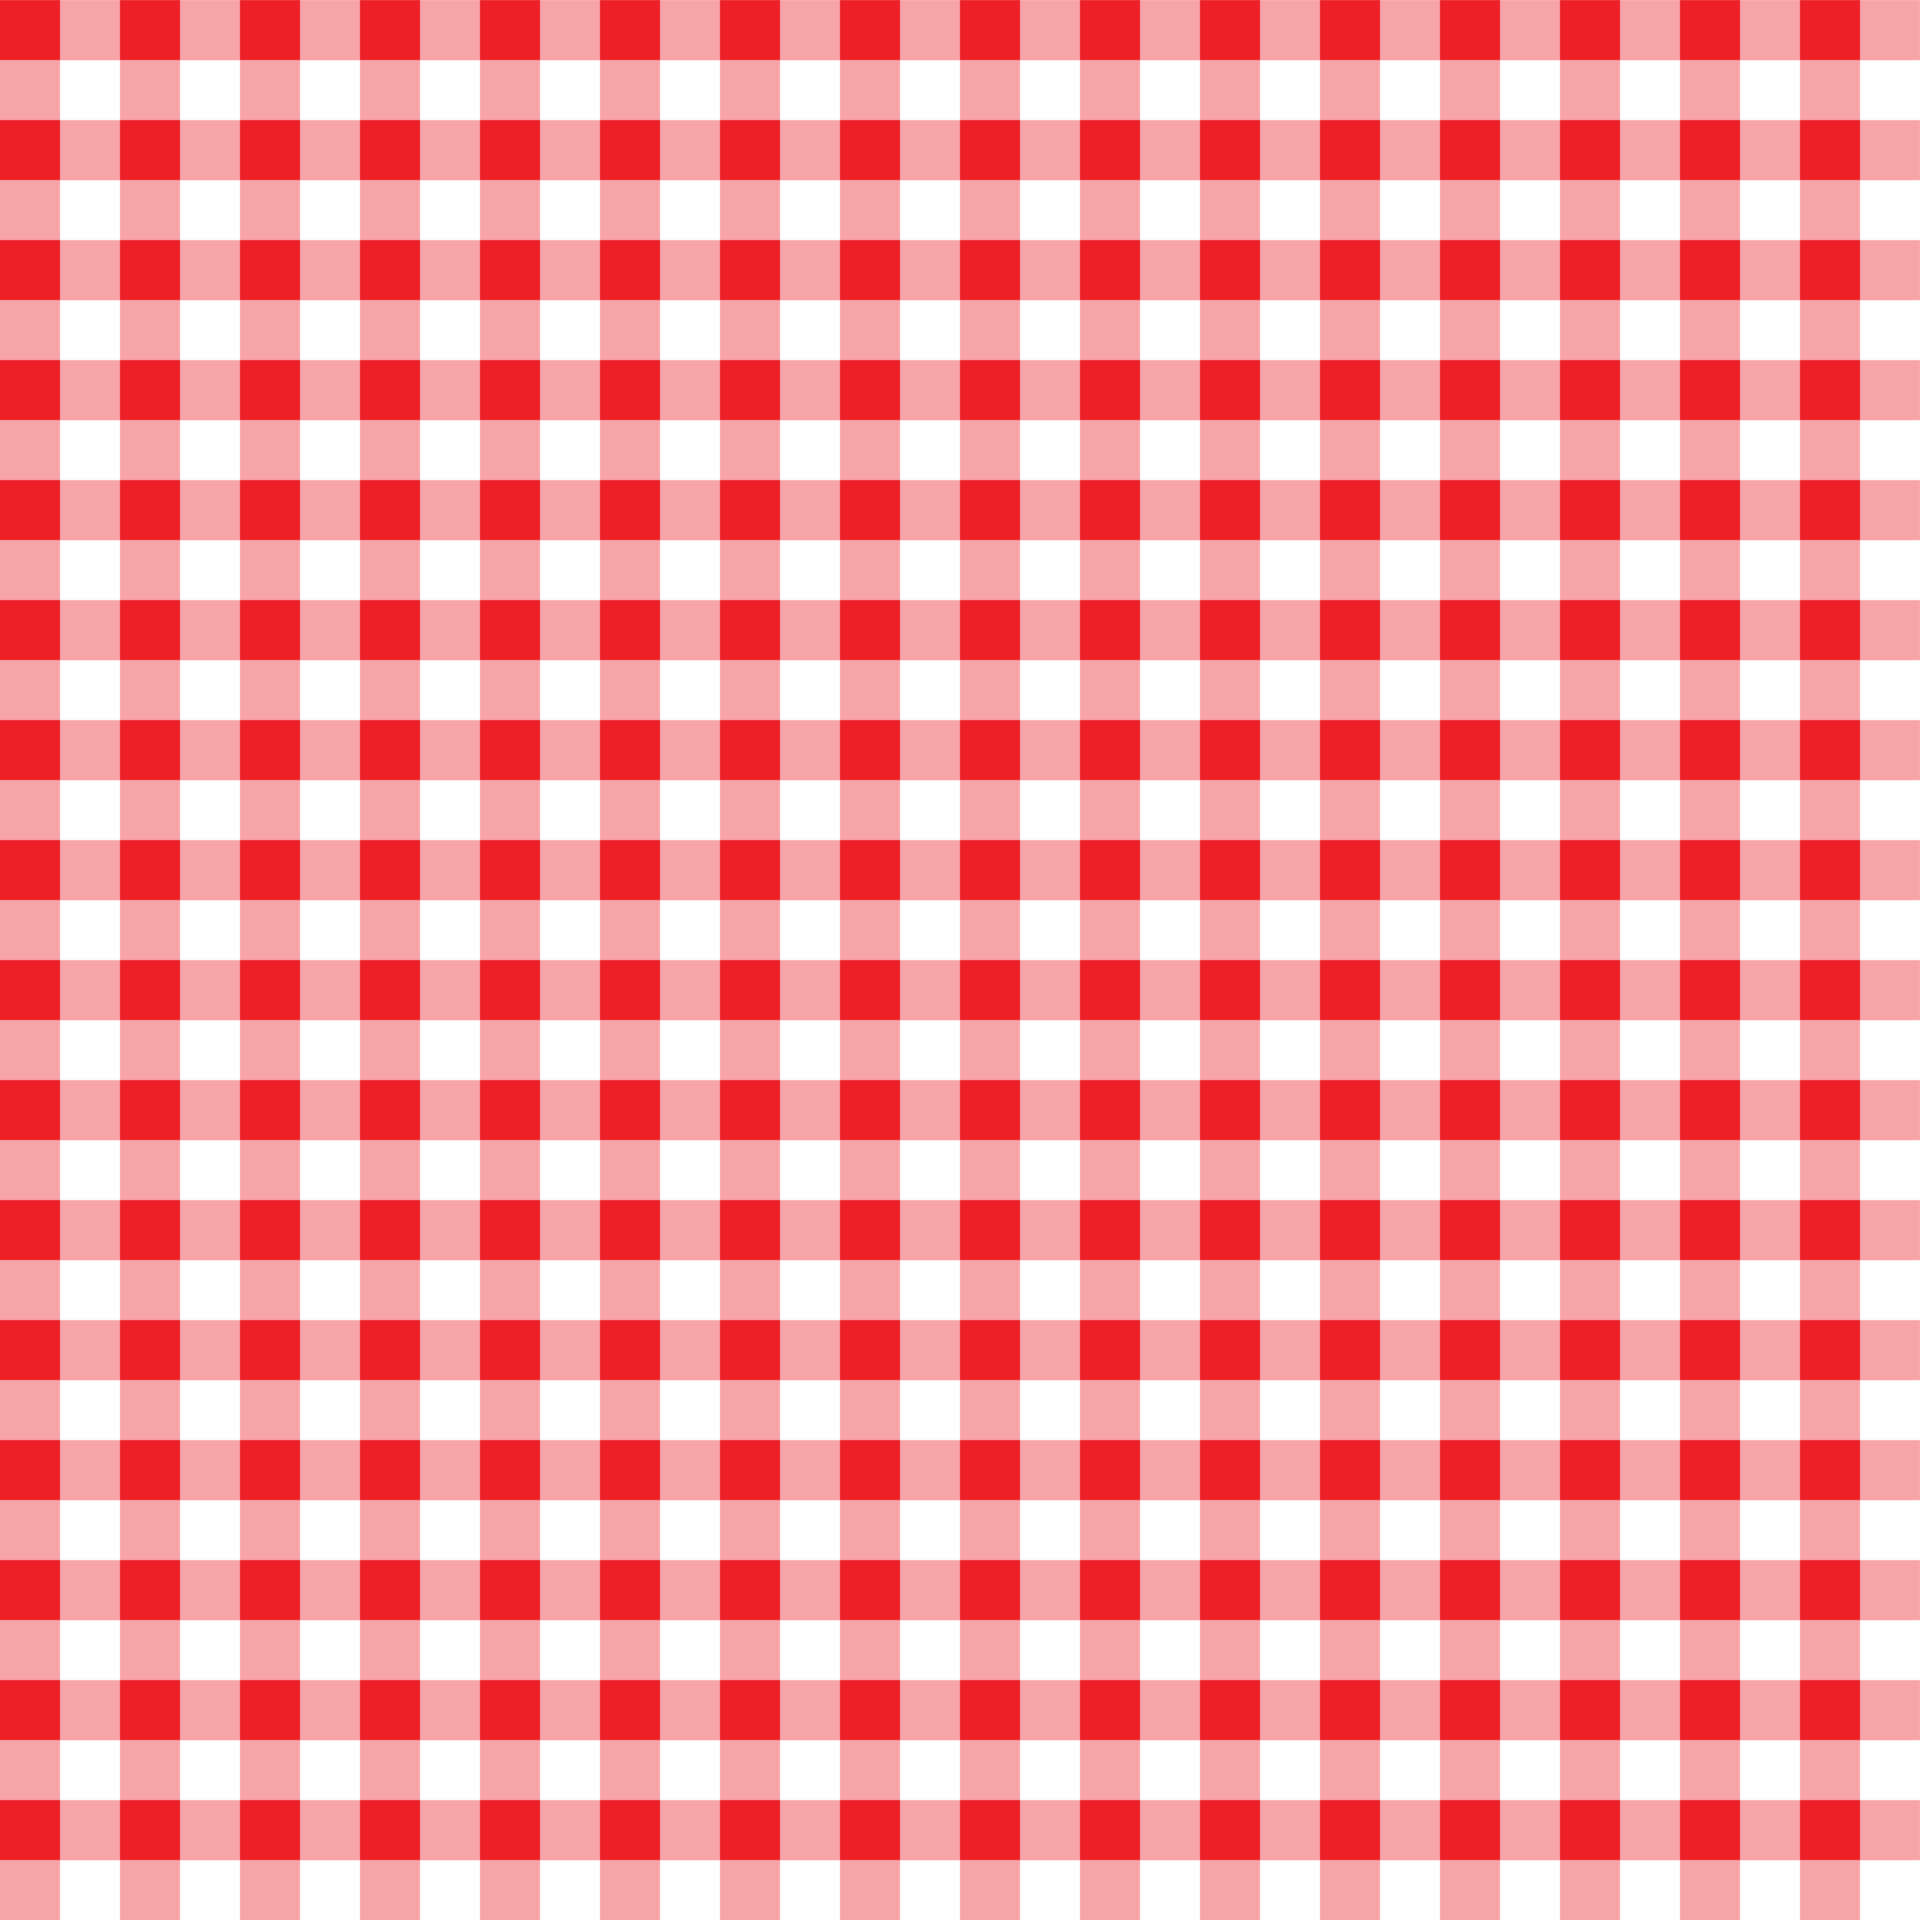 Tecido xadrez vermelho e branco em perspectiva. [download] - Designi